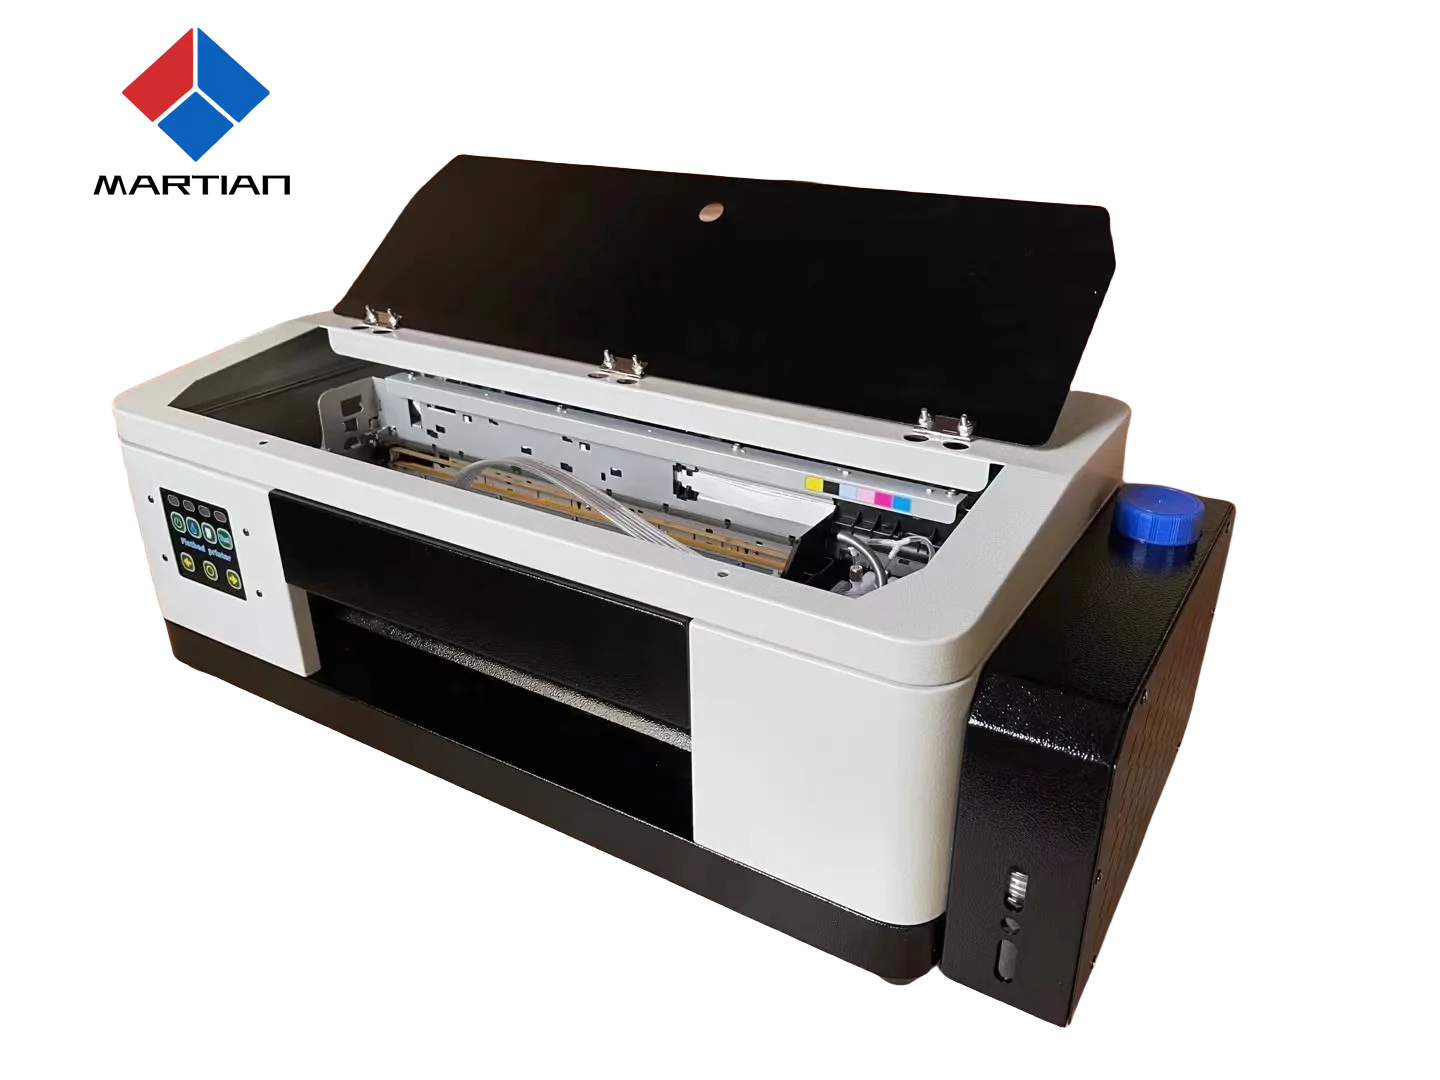 Impresora de camisetas Impresora de alta resolución Impresora de impresión directa sk Impresora de transferencia de calor tela - 5